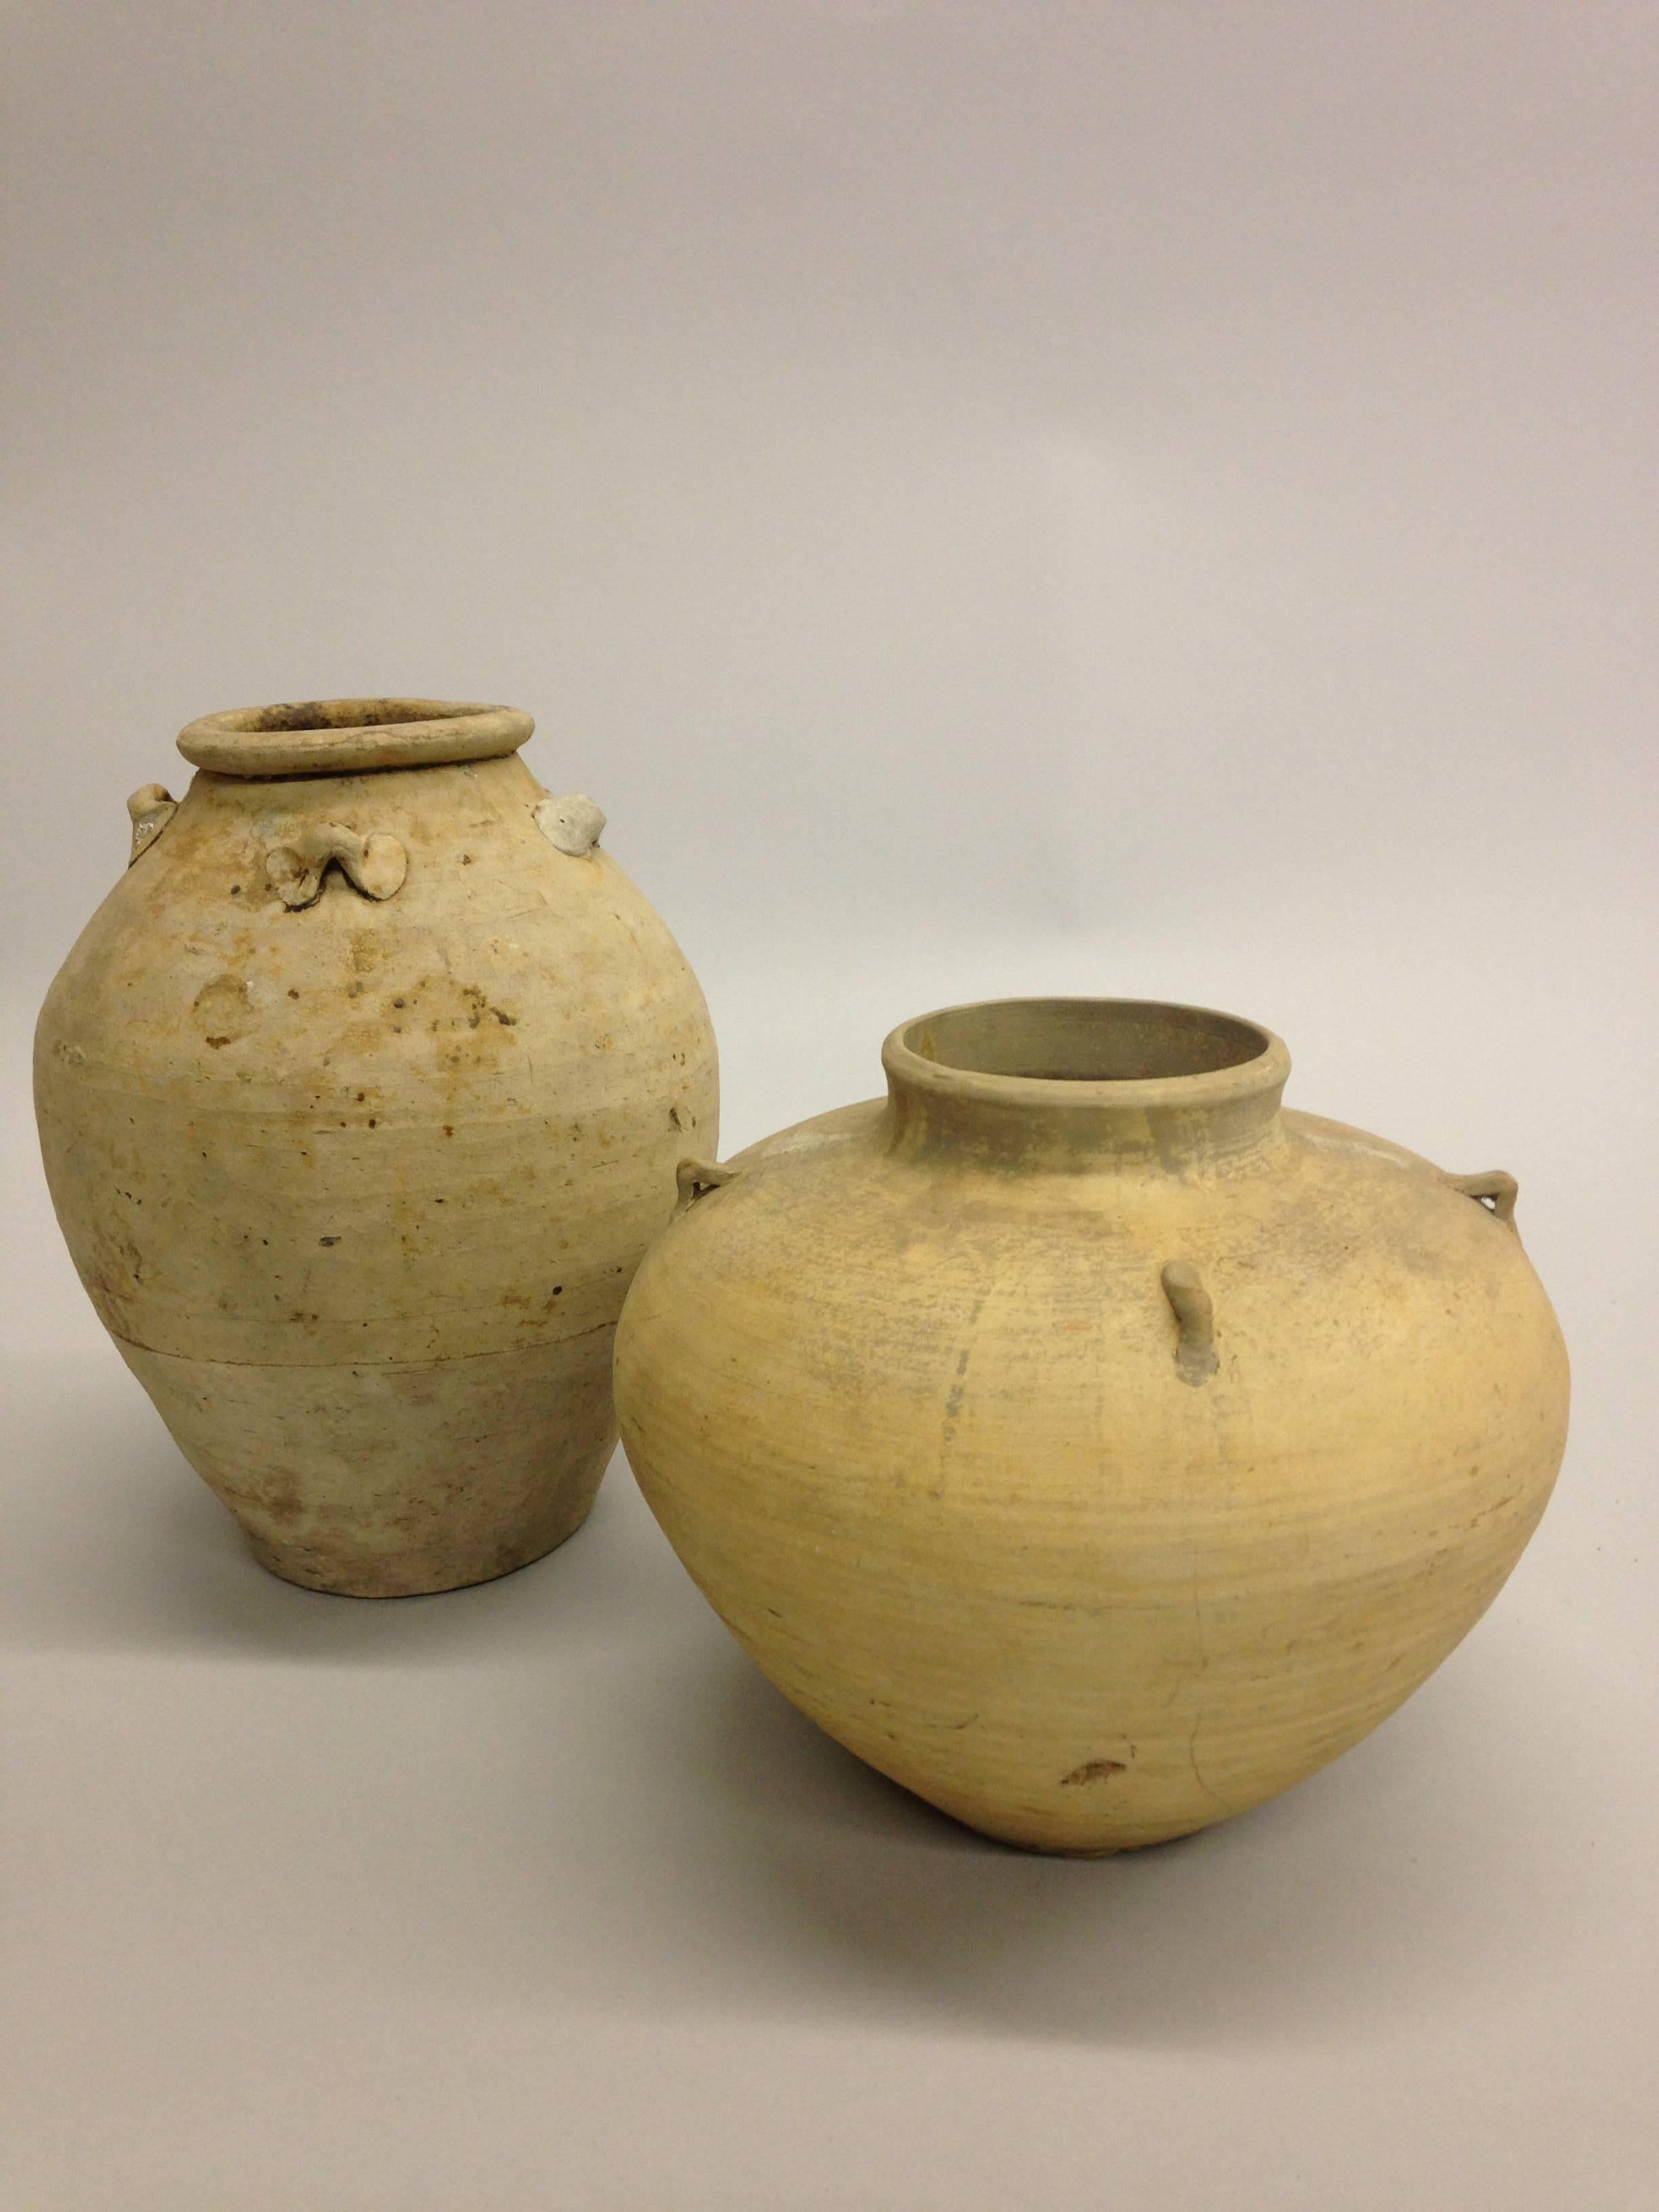 Deux anciennes urnes ou vases khmers. 

Dimensions : H 10,38 x P 8,5 et H 7,5 x P 9

Évalué et vendu à l'unité. 

Références : Poterie, céramique, tribal, rustique, vaisselle, objets, centres de table, pots, bouteilles, bols.